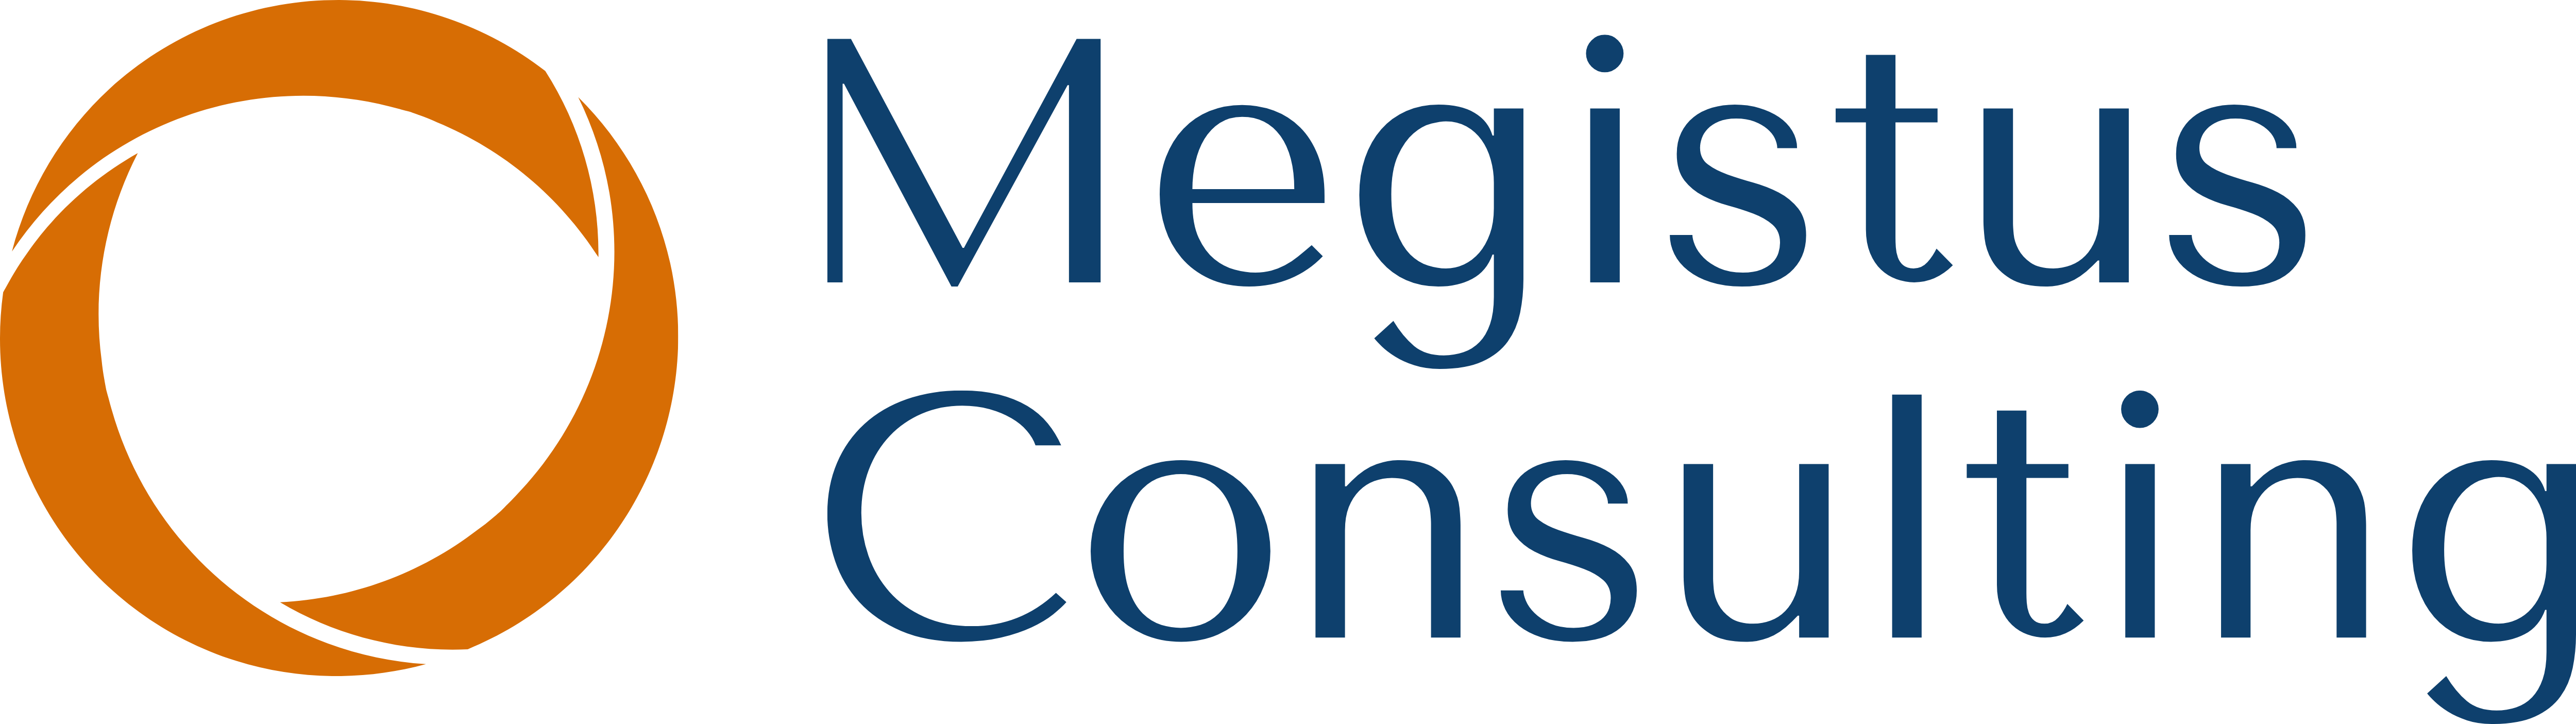 Megistus Consulting GmbH